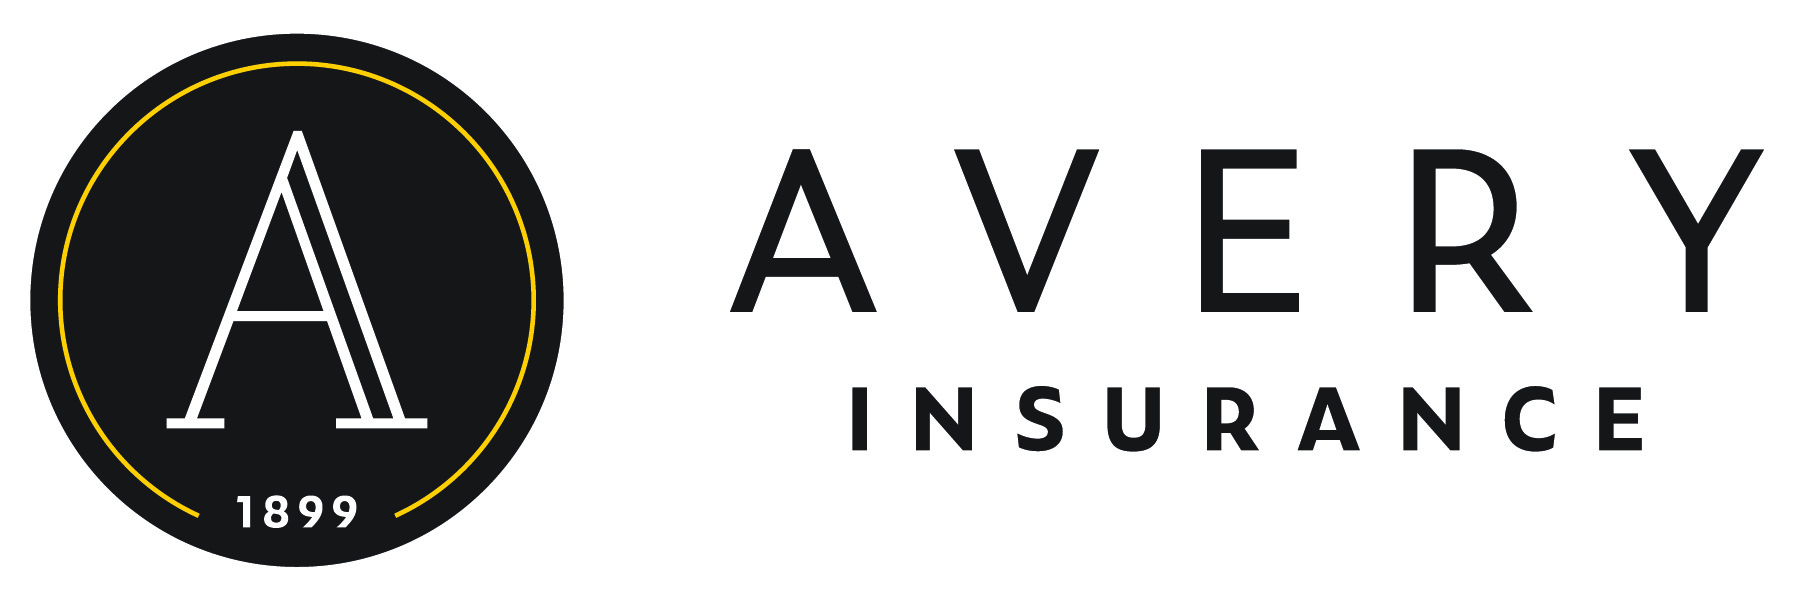 Avery Insurance logo